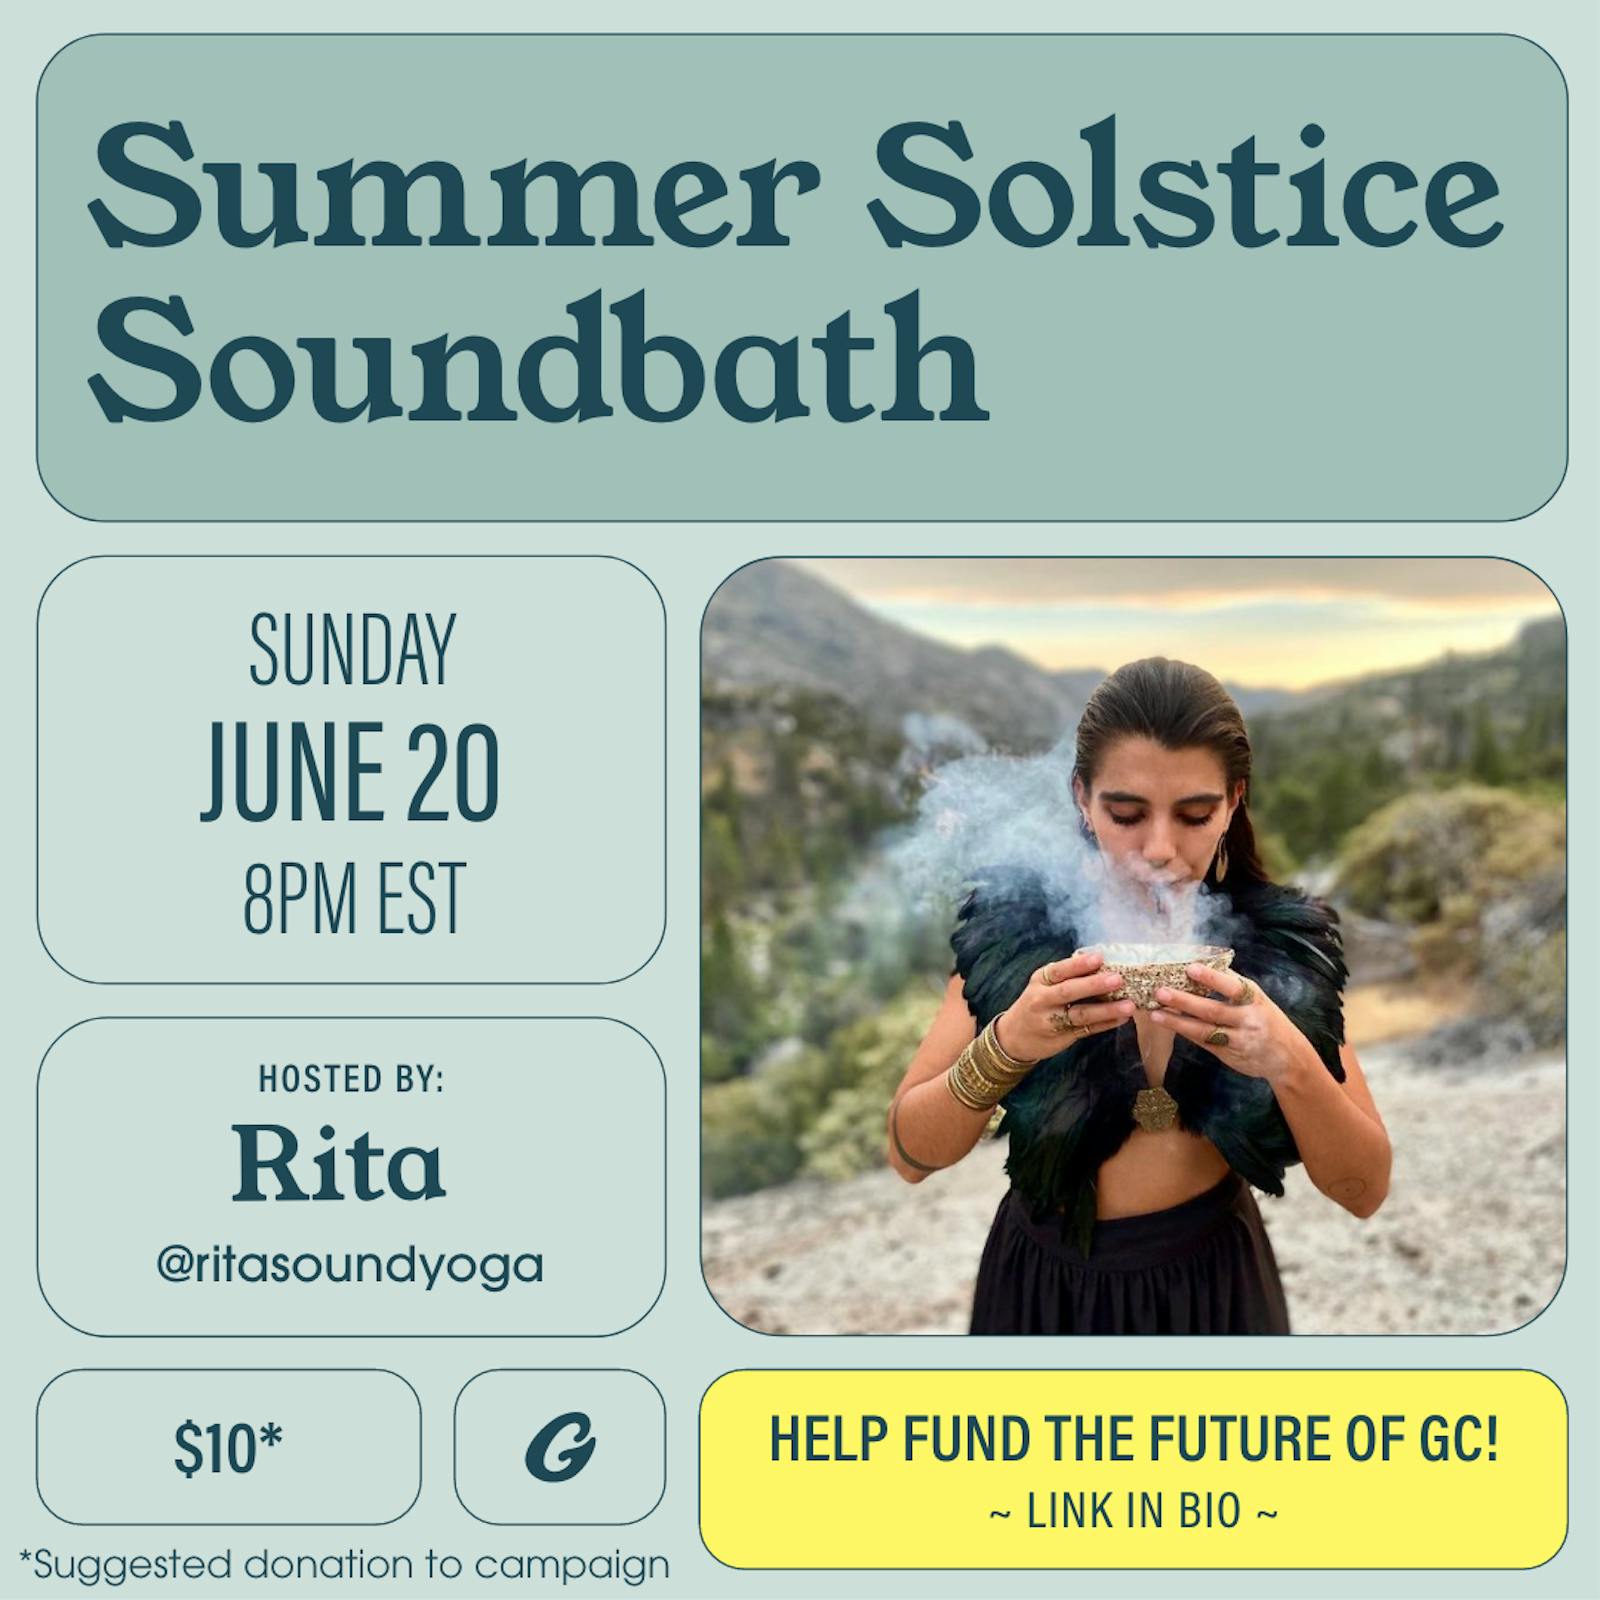 Summer Solstice Soundbath